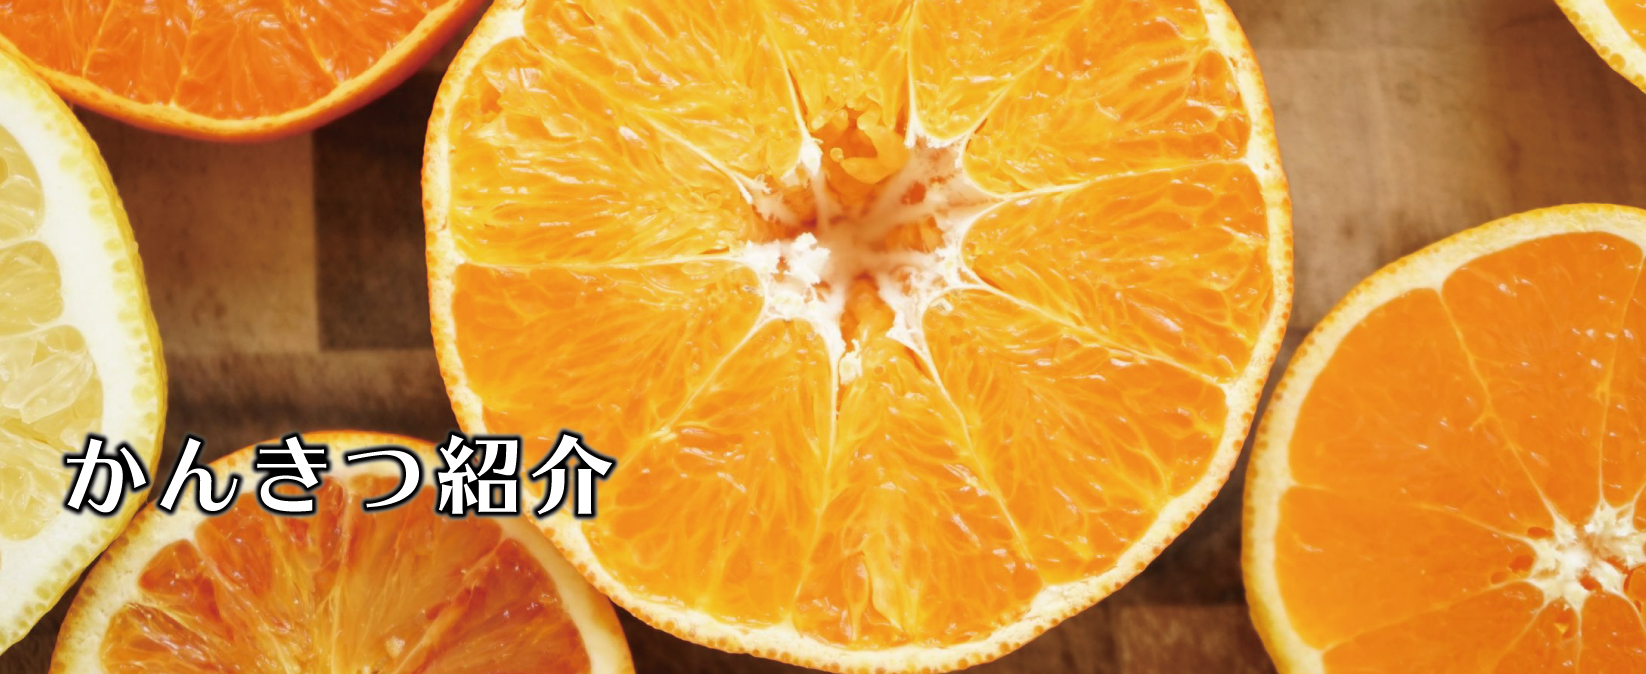 柑橘紹介